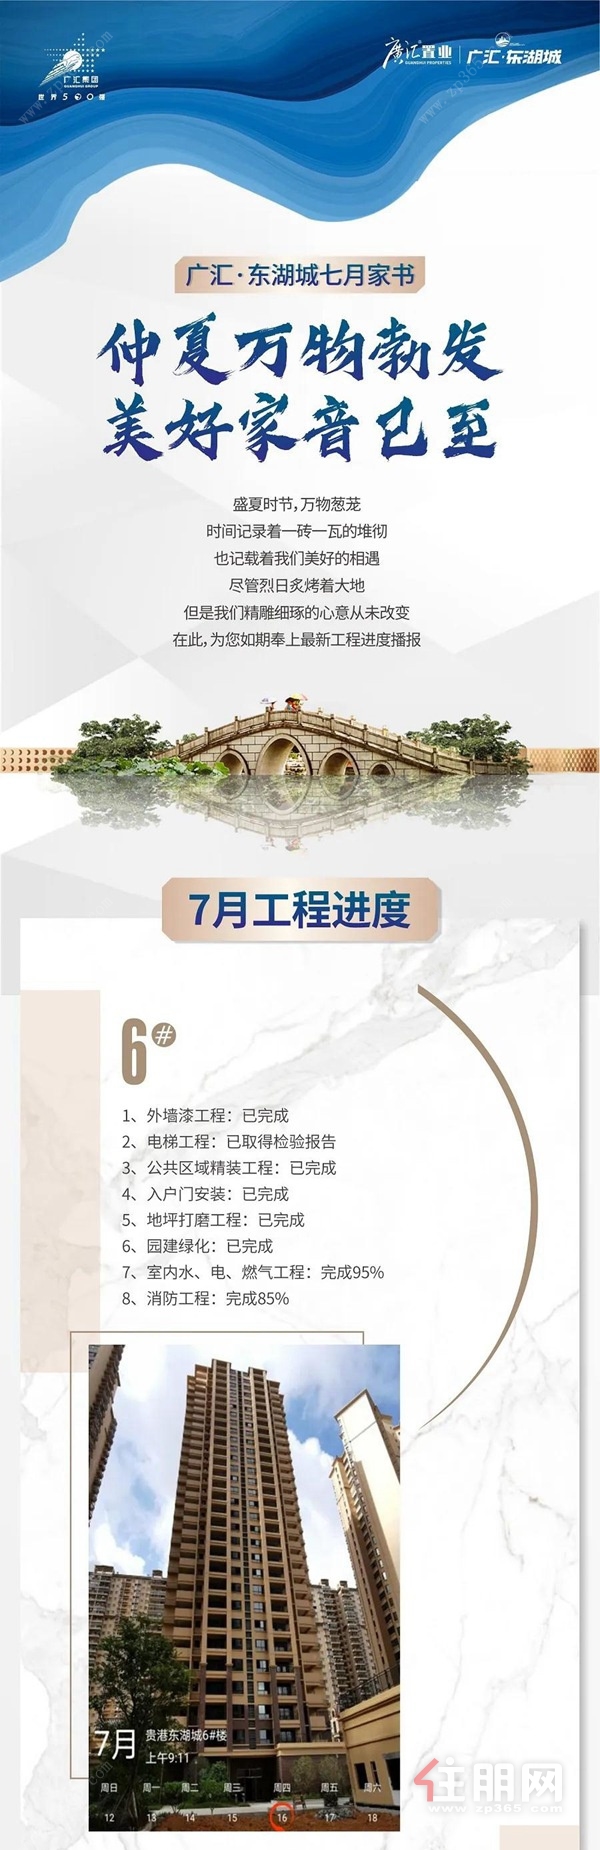 广汇·东湖城7月份工程进度图